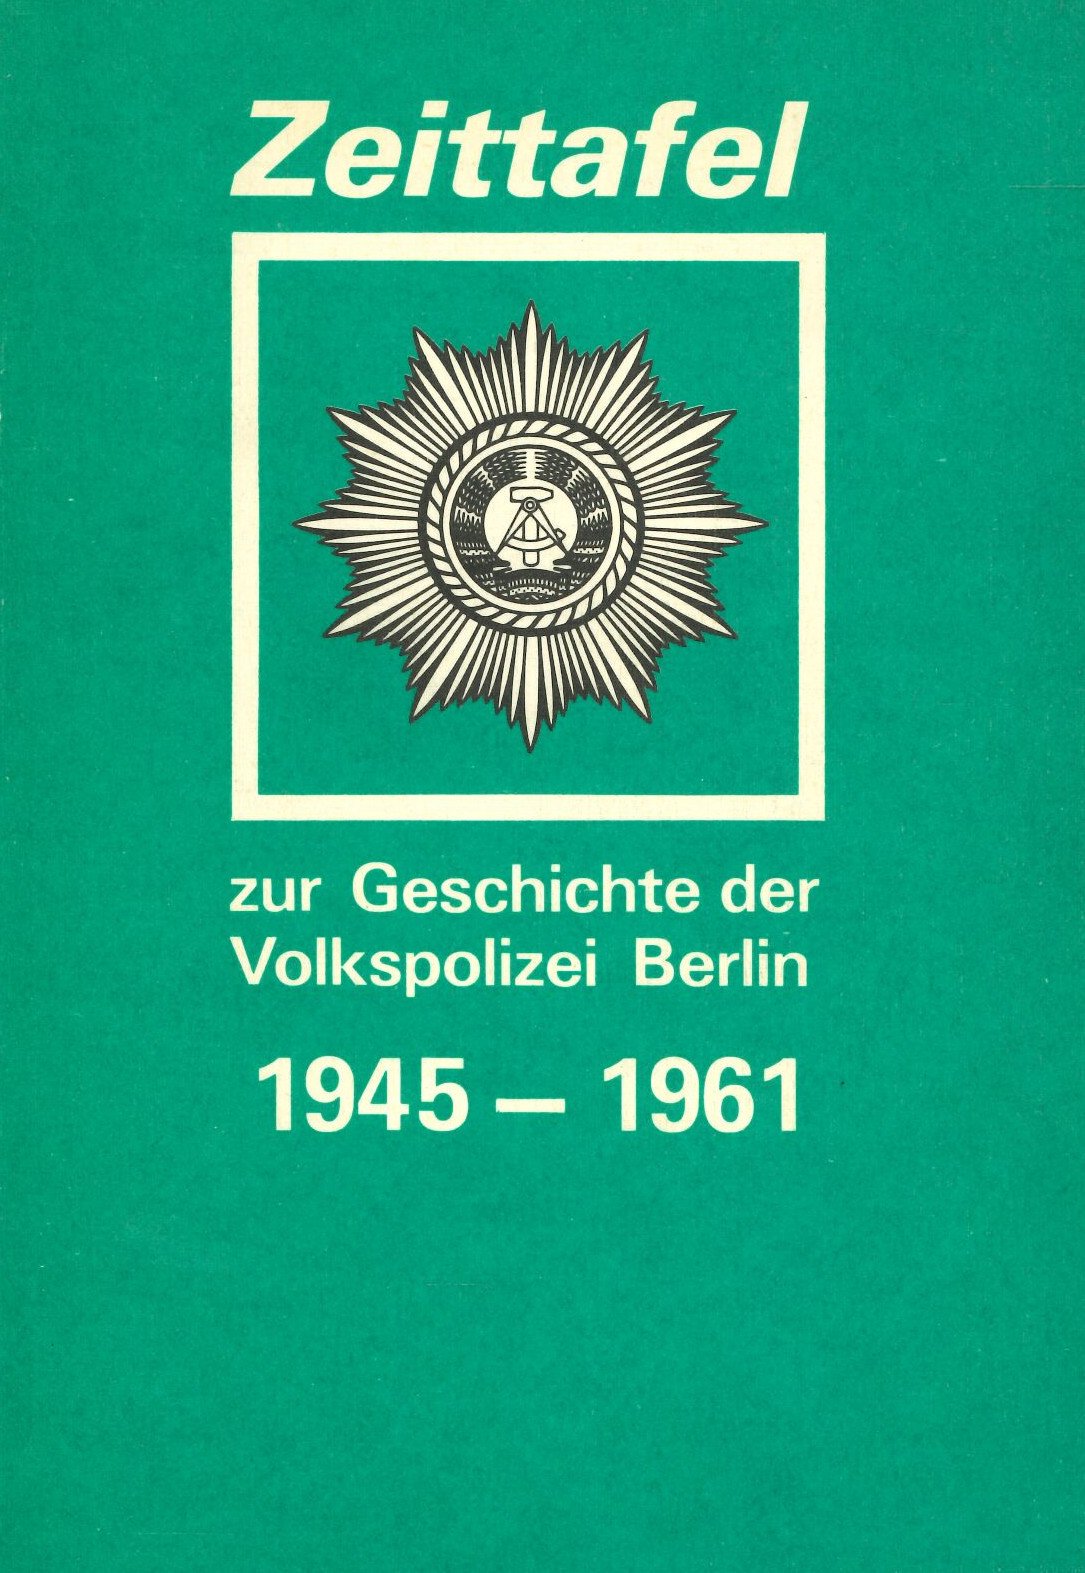 Zeittafel zur Geschichte der Volkspolizei Berlin 1945-1961 (Feuerwehrmuseum Grethen CC BY-NC-SA)